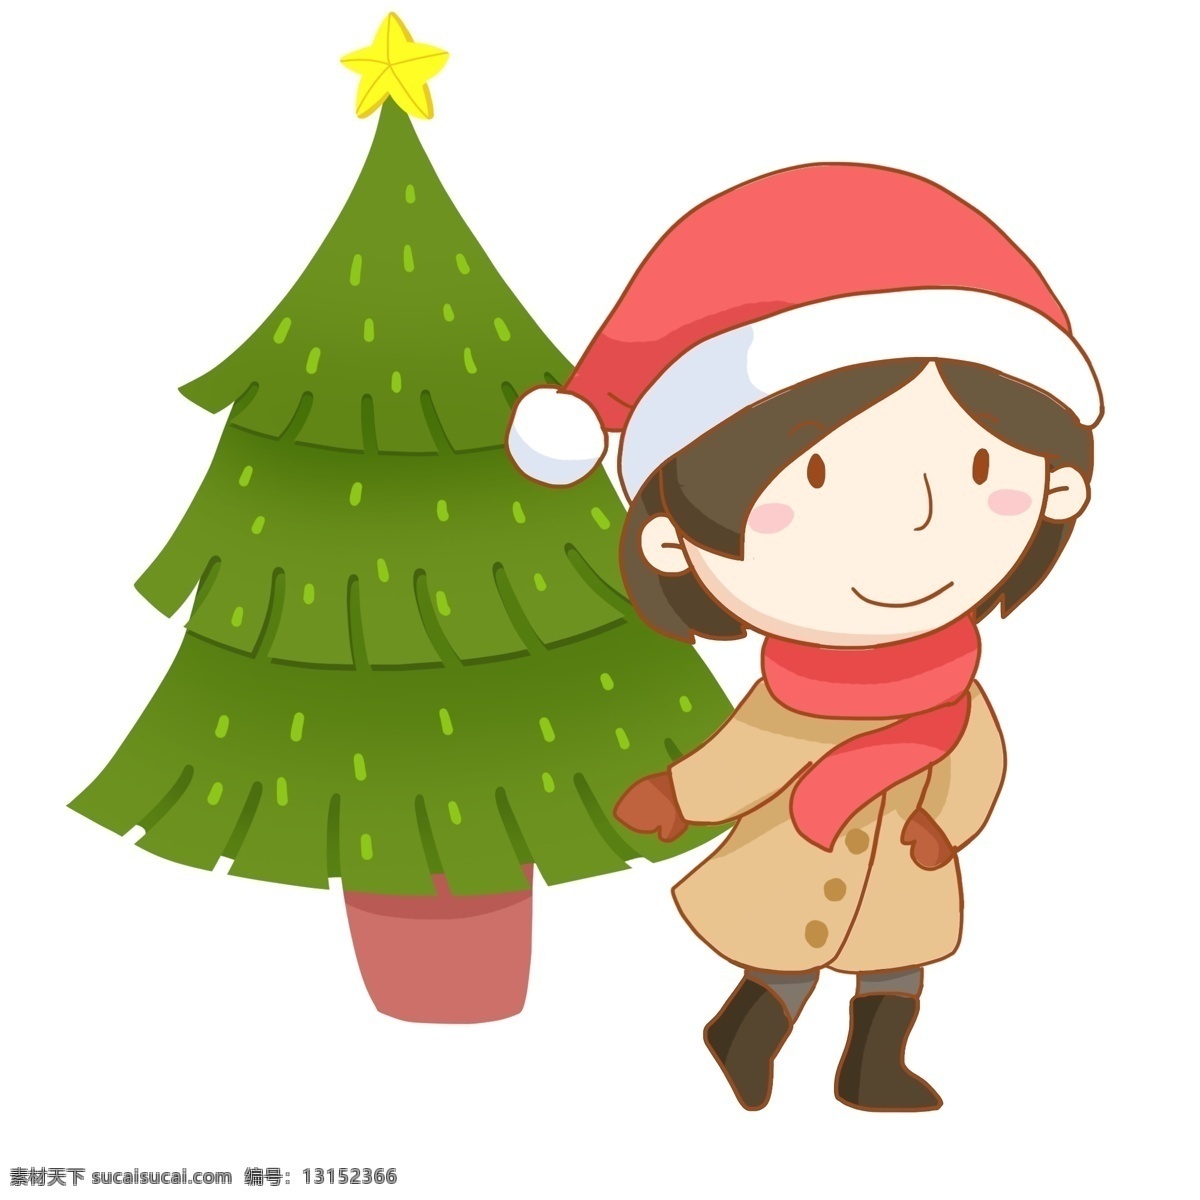 圣诞节 女孩 圣诞树 免 抠 圣诞夜 圣诞帽 风衣 围巾 保暖 行走 走路 原创手绘 开心 愉快